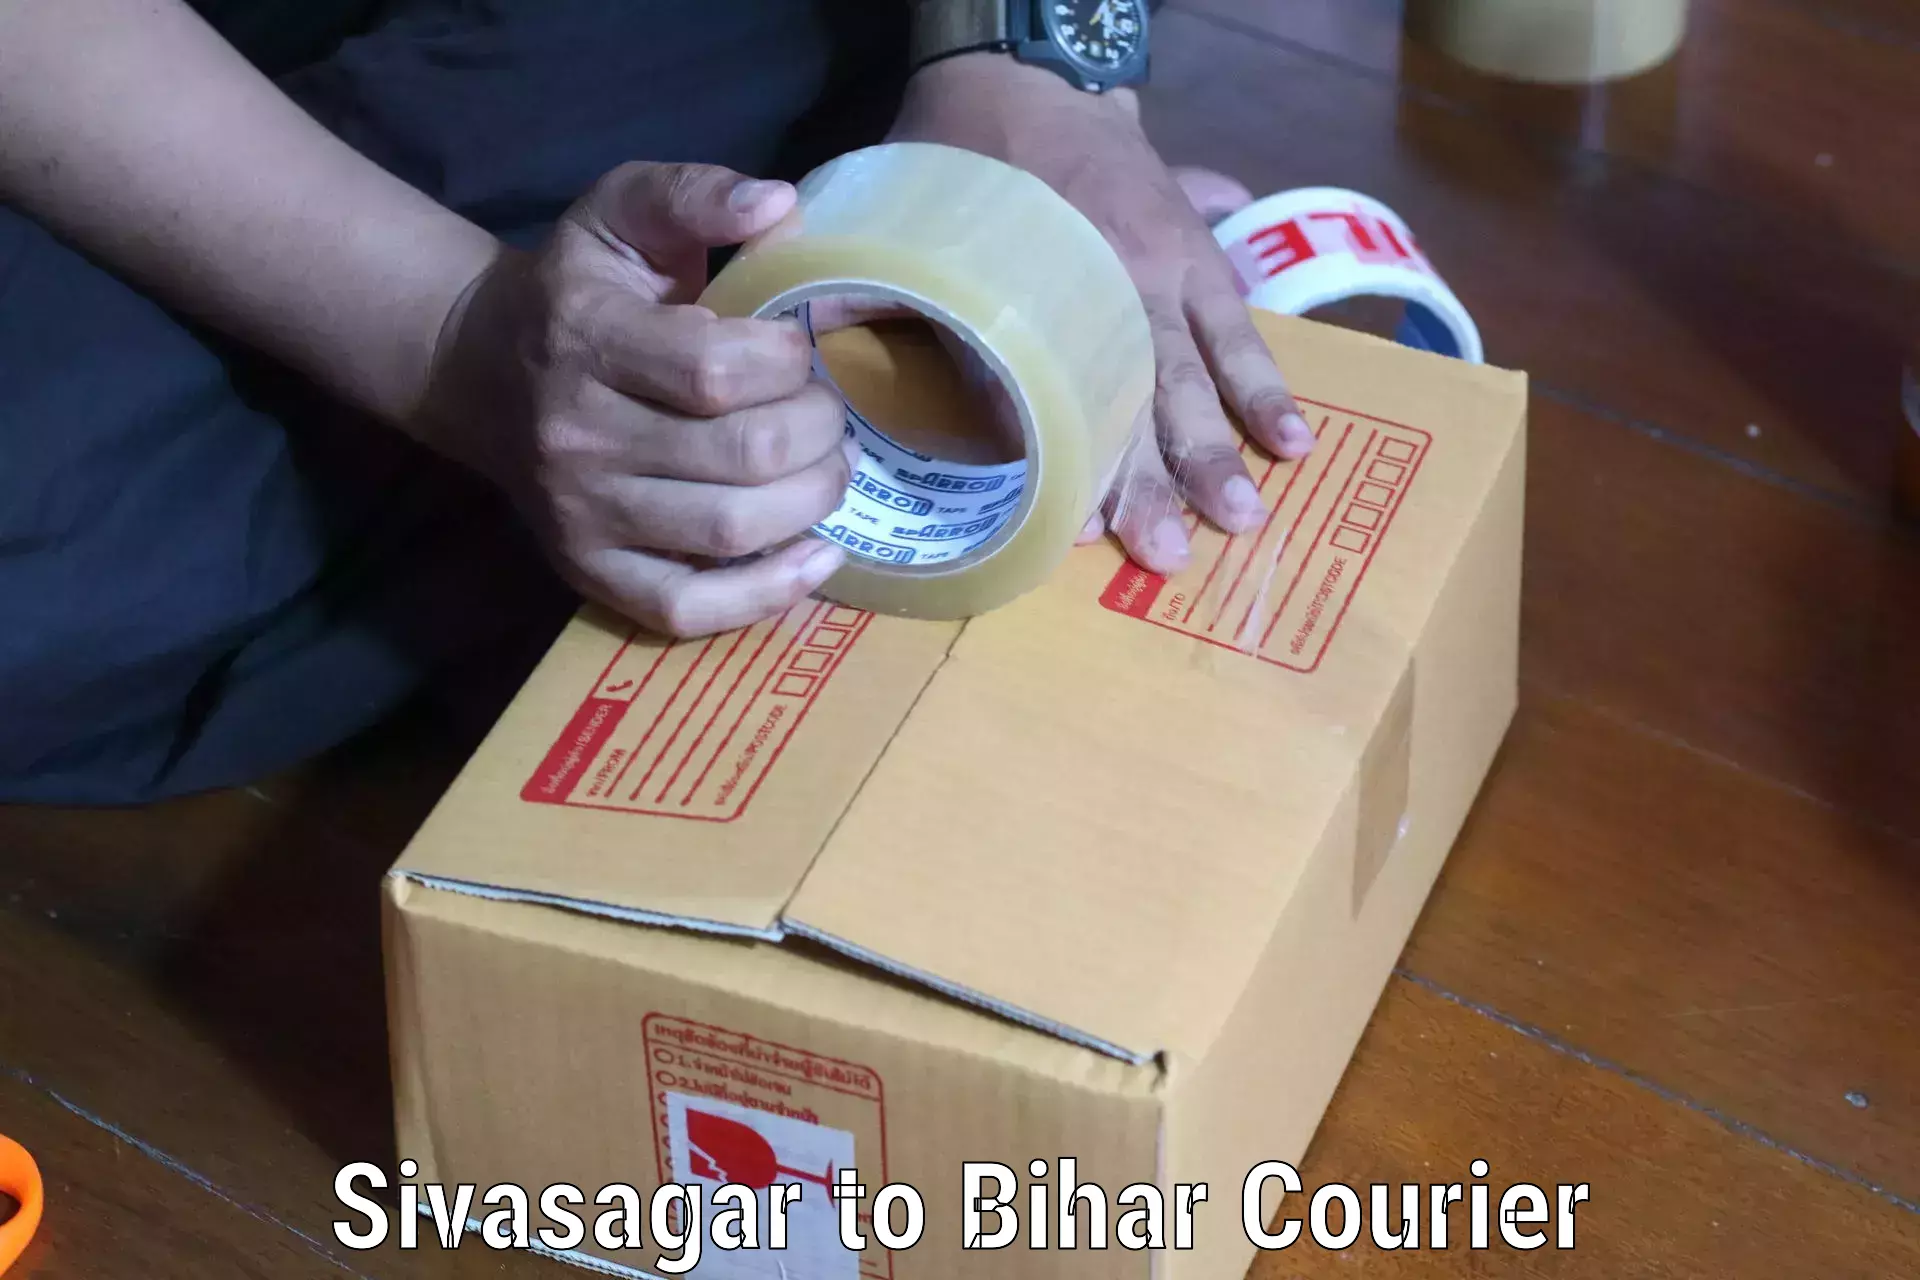 On-call courier service Sivasagar to Piro